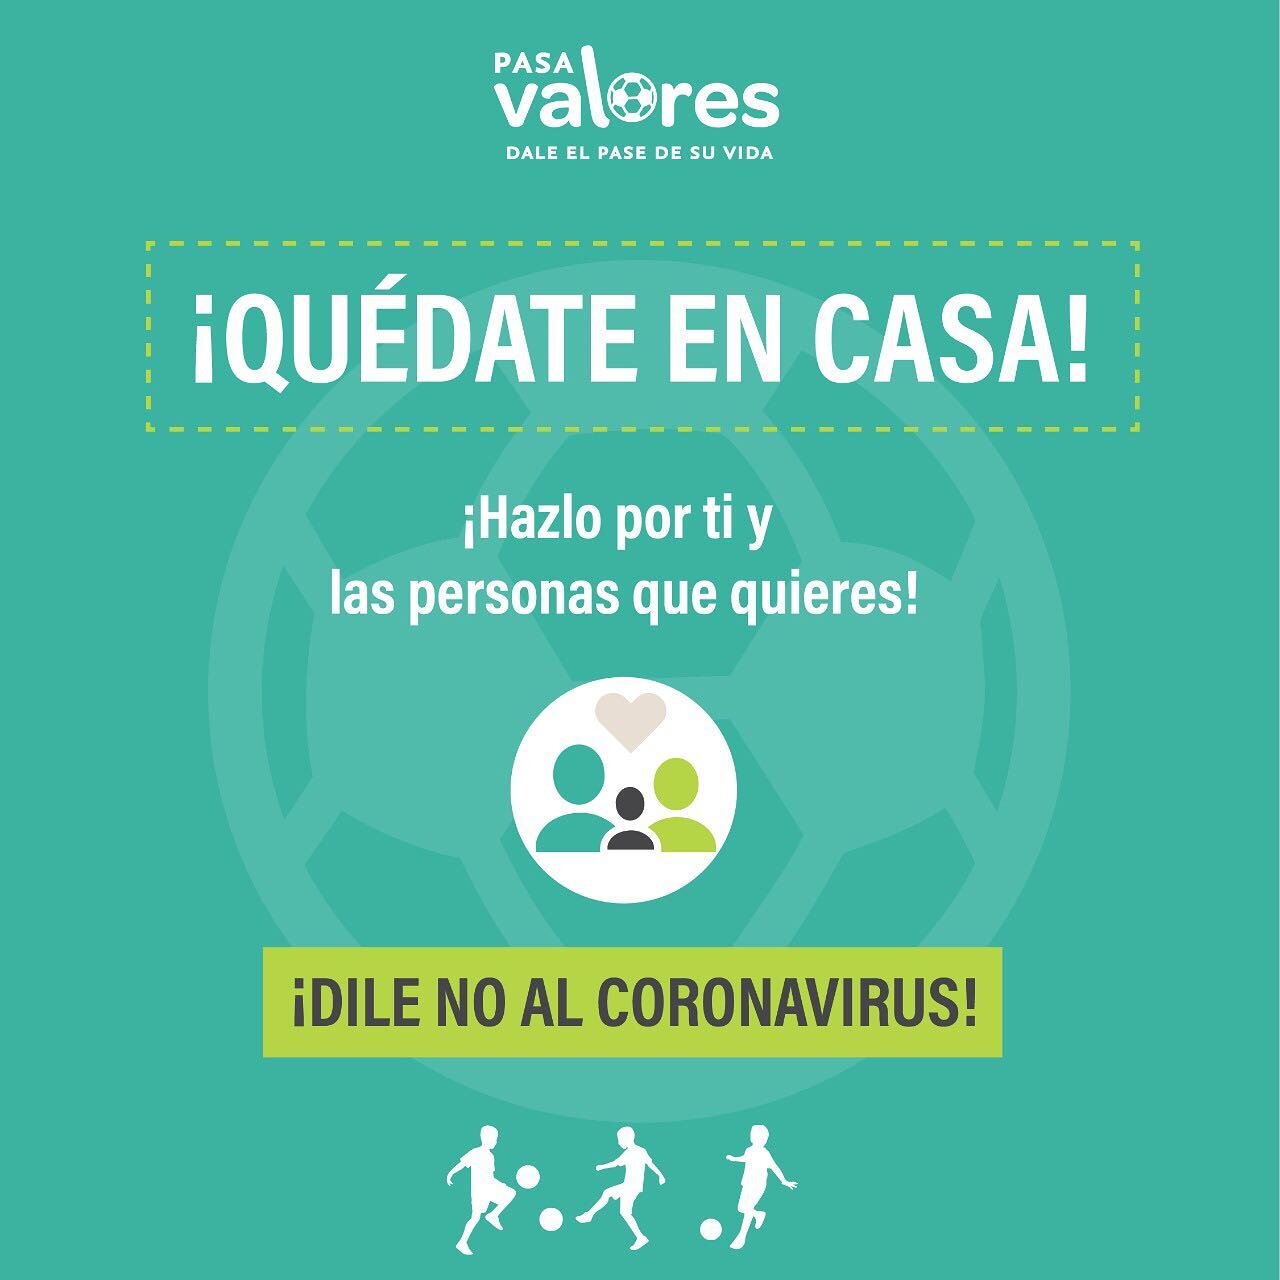 El mensaje es uno solo: #Qu&eacute;dateEnCasa &iexcl;Pronto saldremos de esta!

#PasaValores #DaleElPaseDeSuVida #CortaLaCadena #Coronavirus #covıd19 #valores #cuarentena